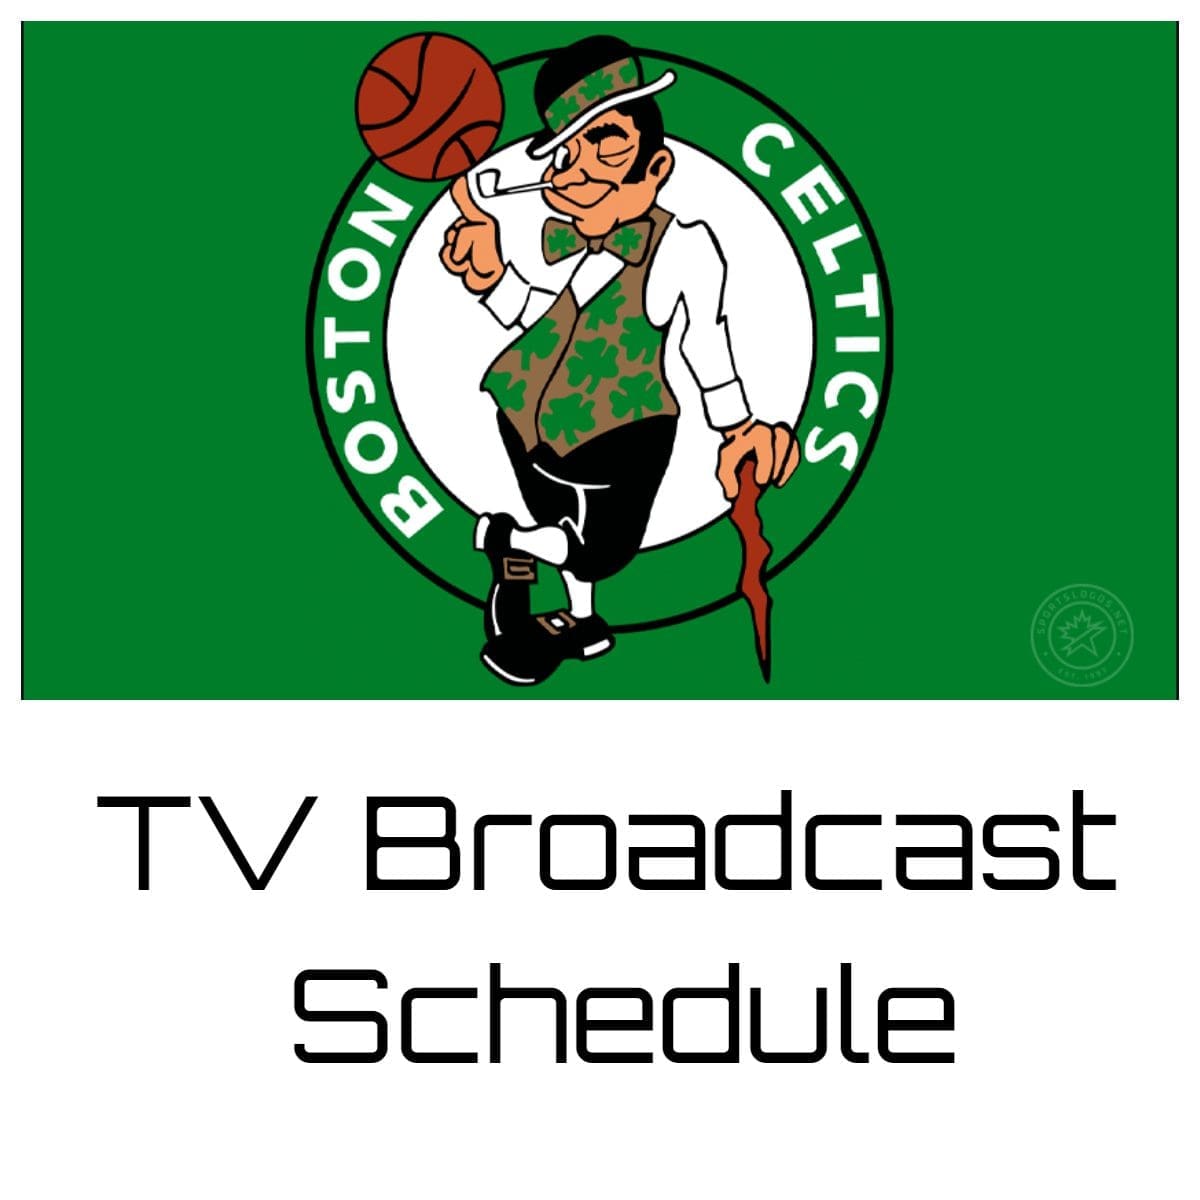 Boston Celtics TV Broadcast Schedule